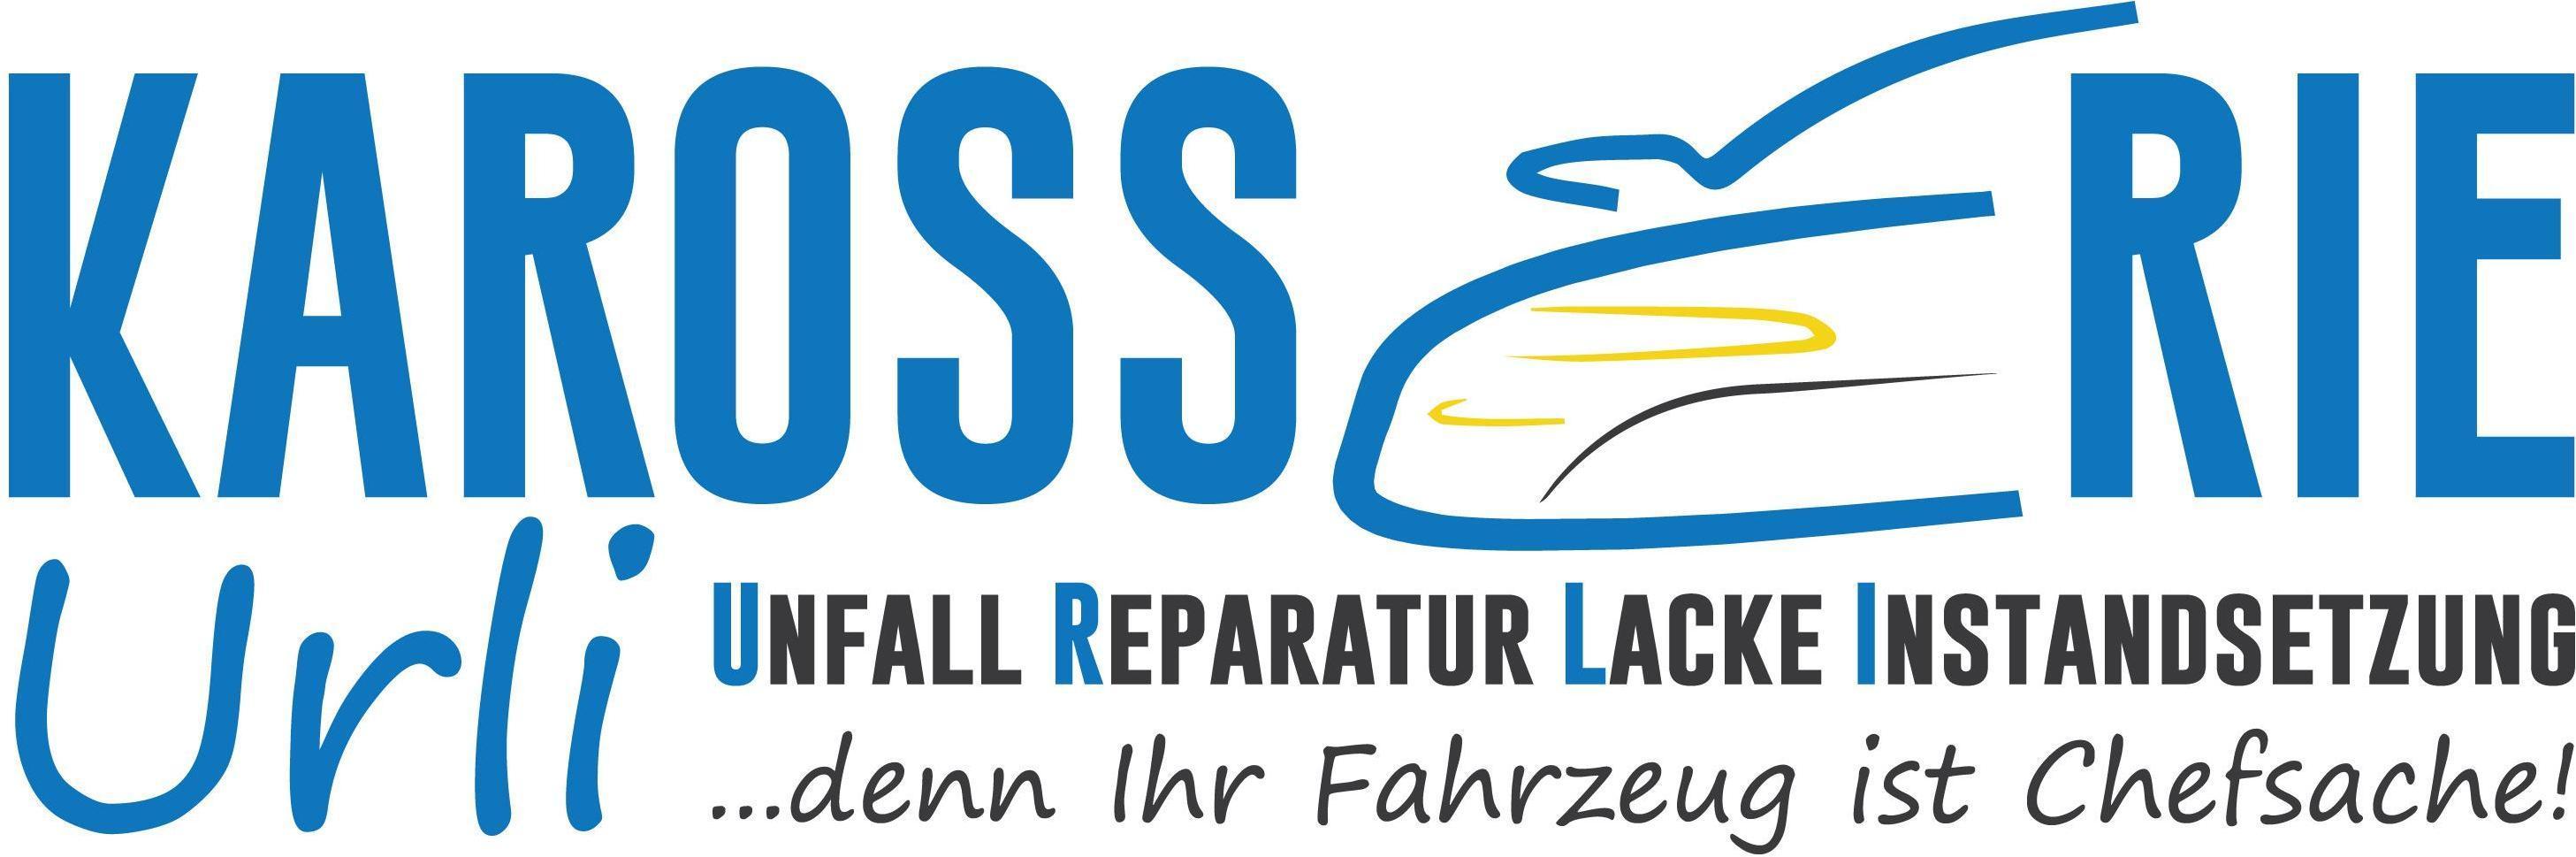 Logo Karosserie Urli